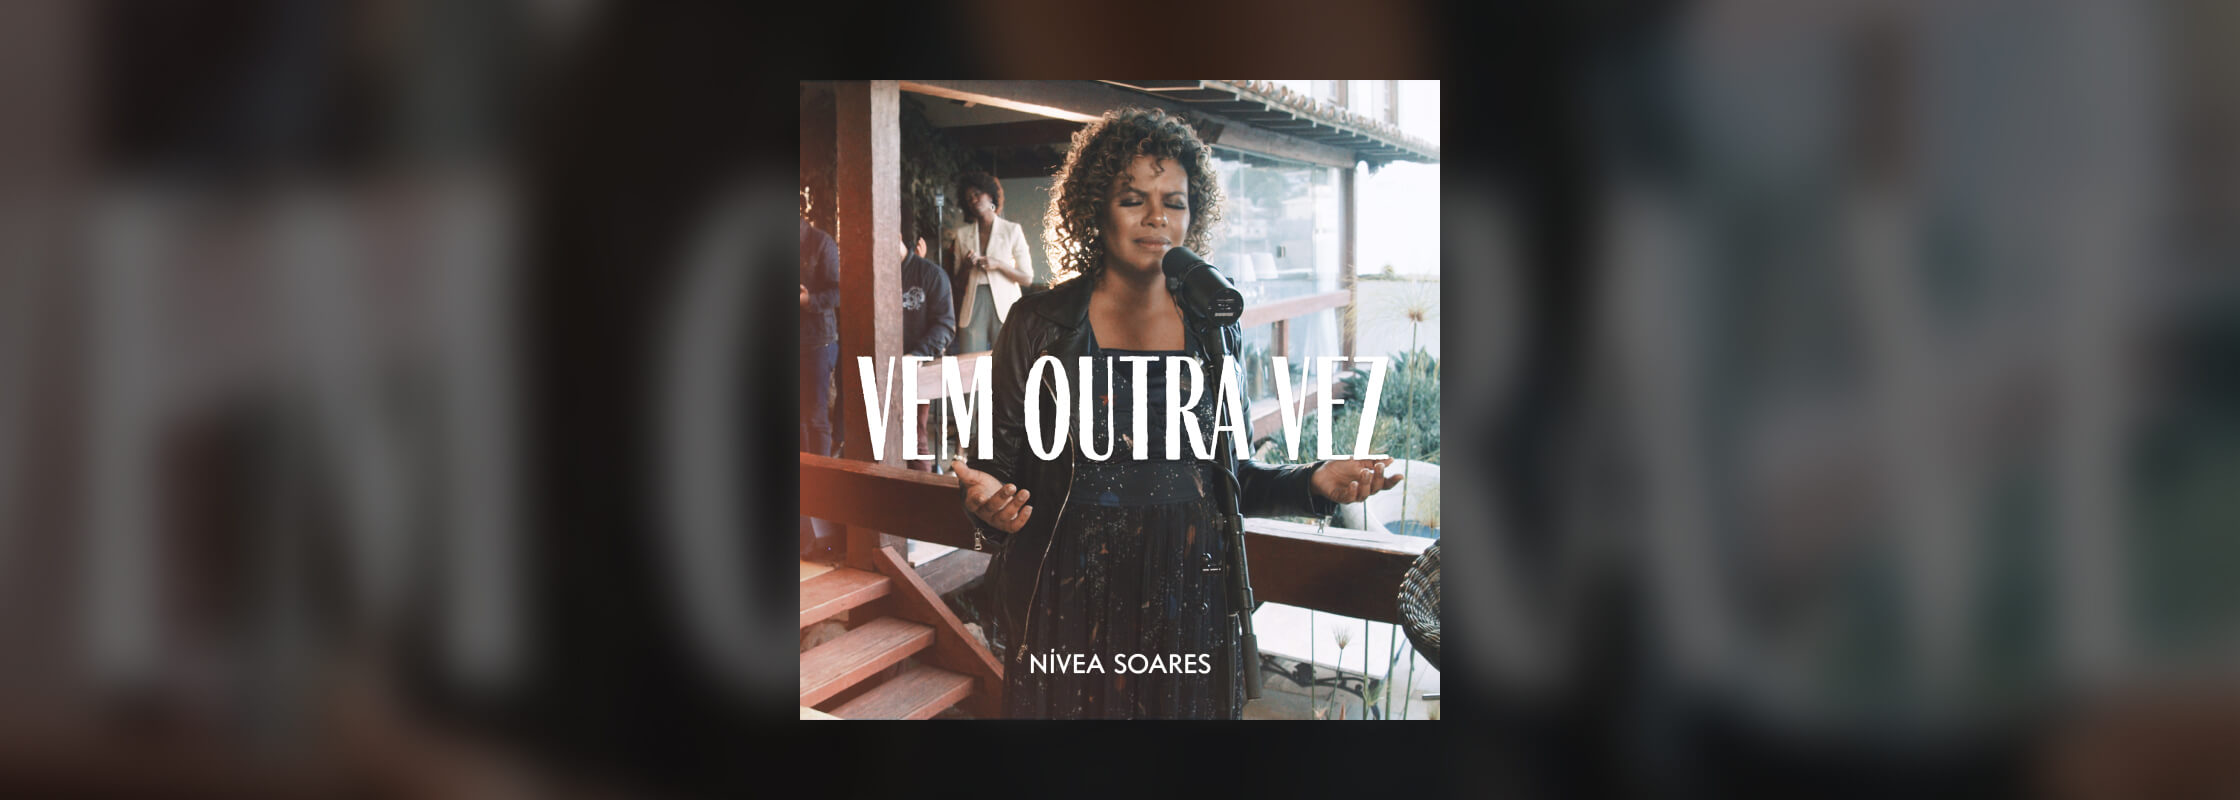 Novo single de Nivea Soares